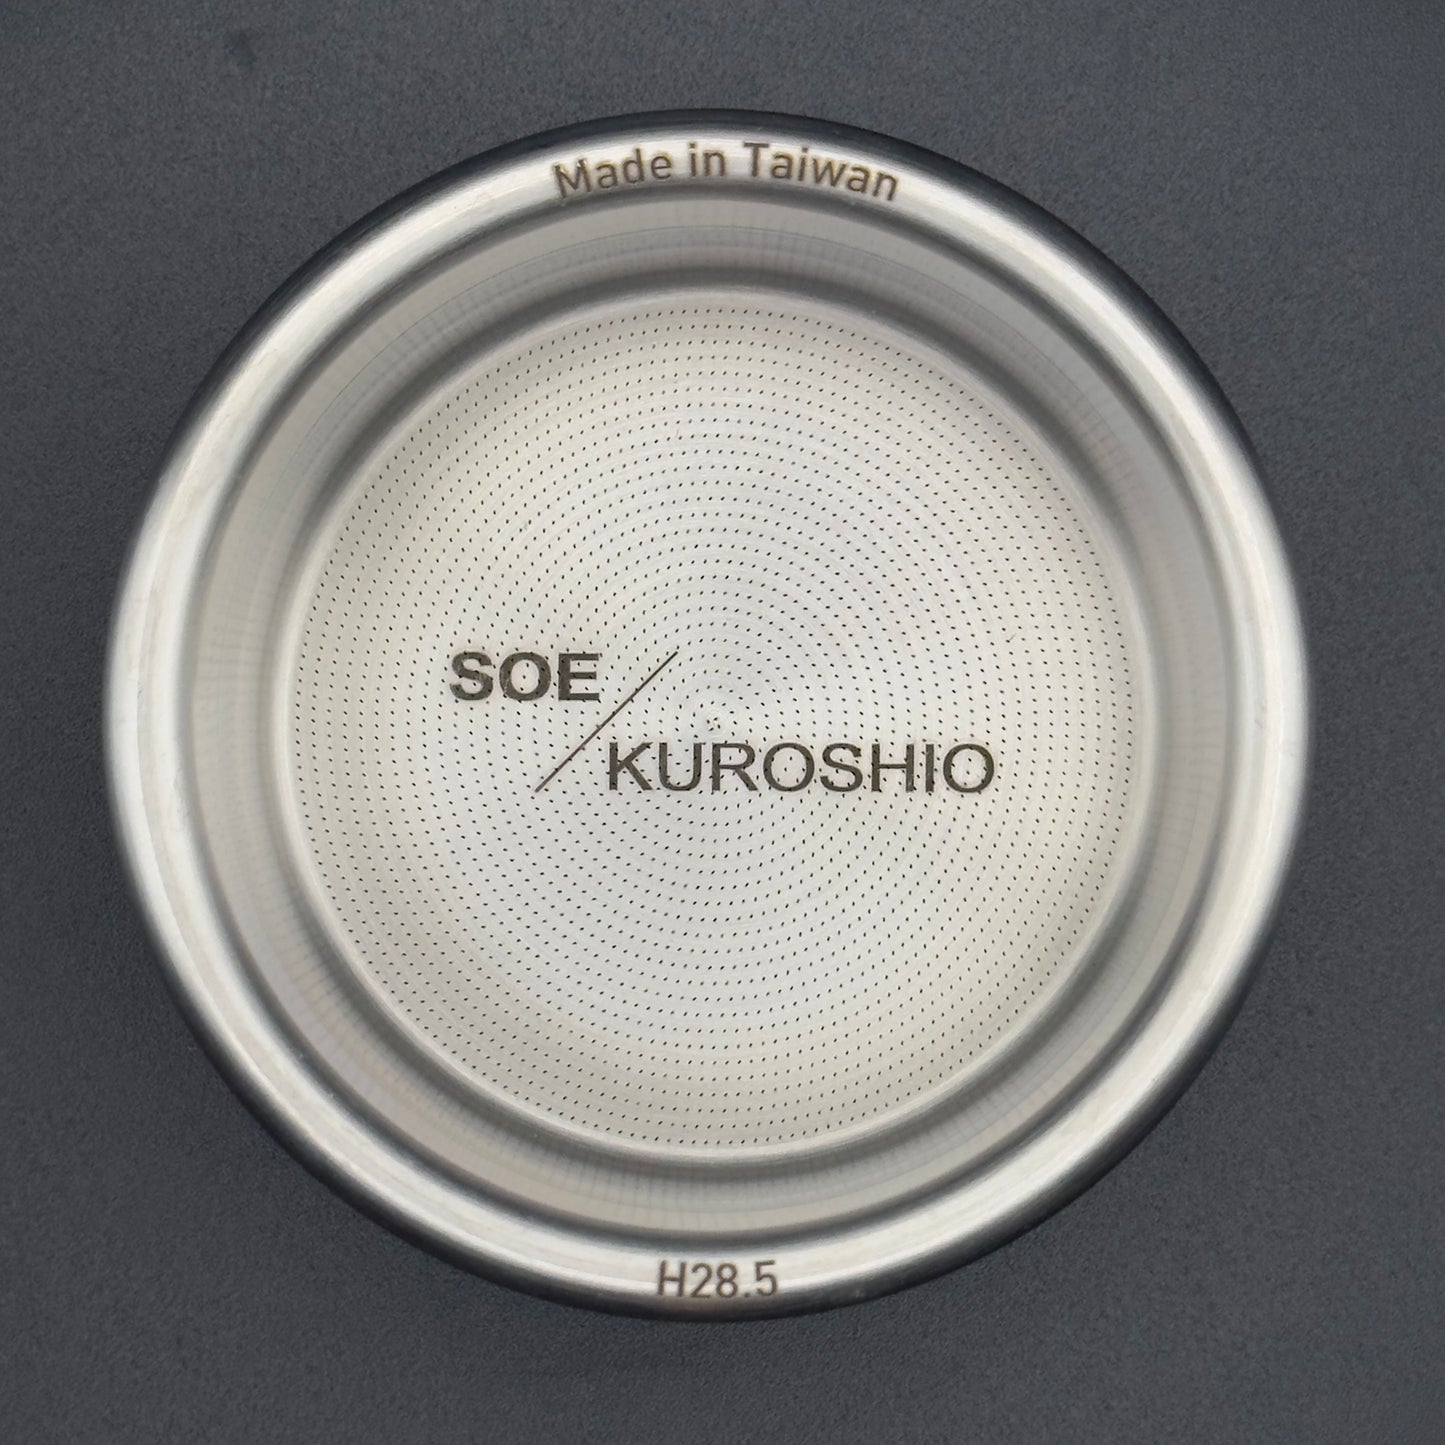 SOE/KUROSHIO_H28.5/22g